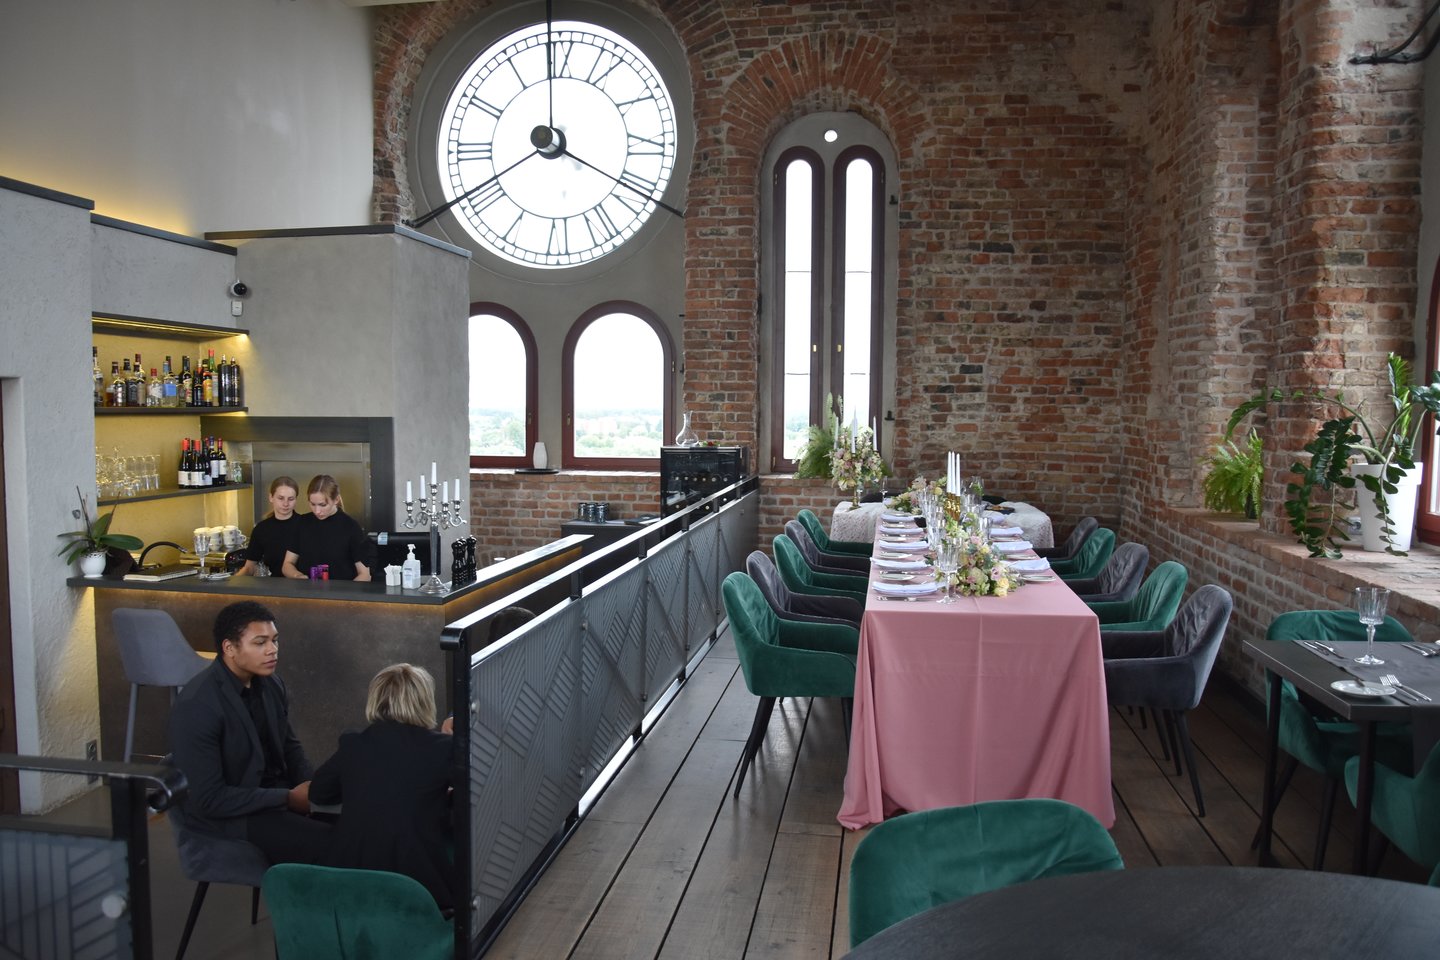  Jelgavos bažnyčios bokšte - restoranas ir apžvalgos aikštelė.   <br> A.Srėbalienėsd nuotr. 